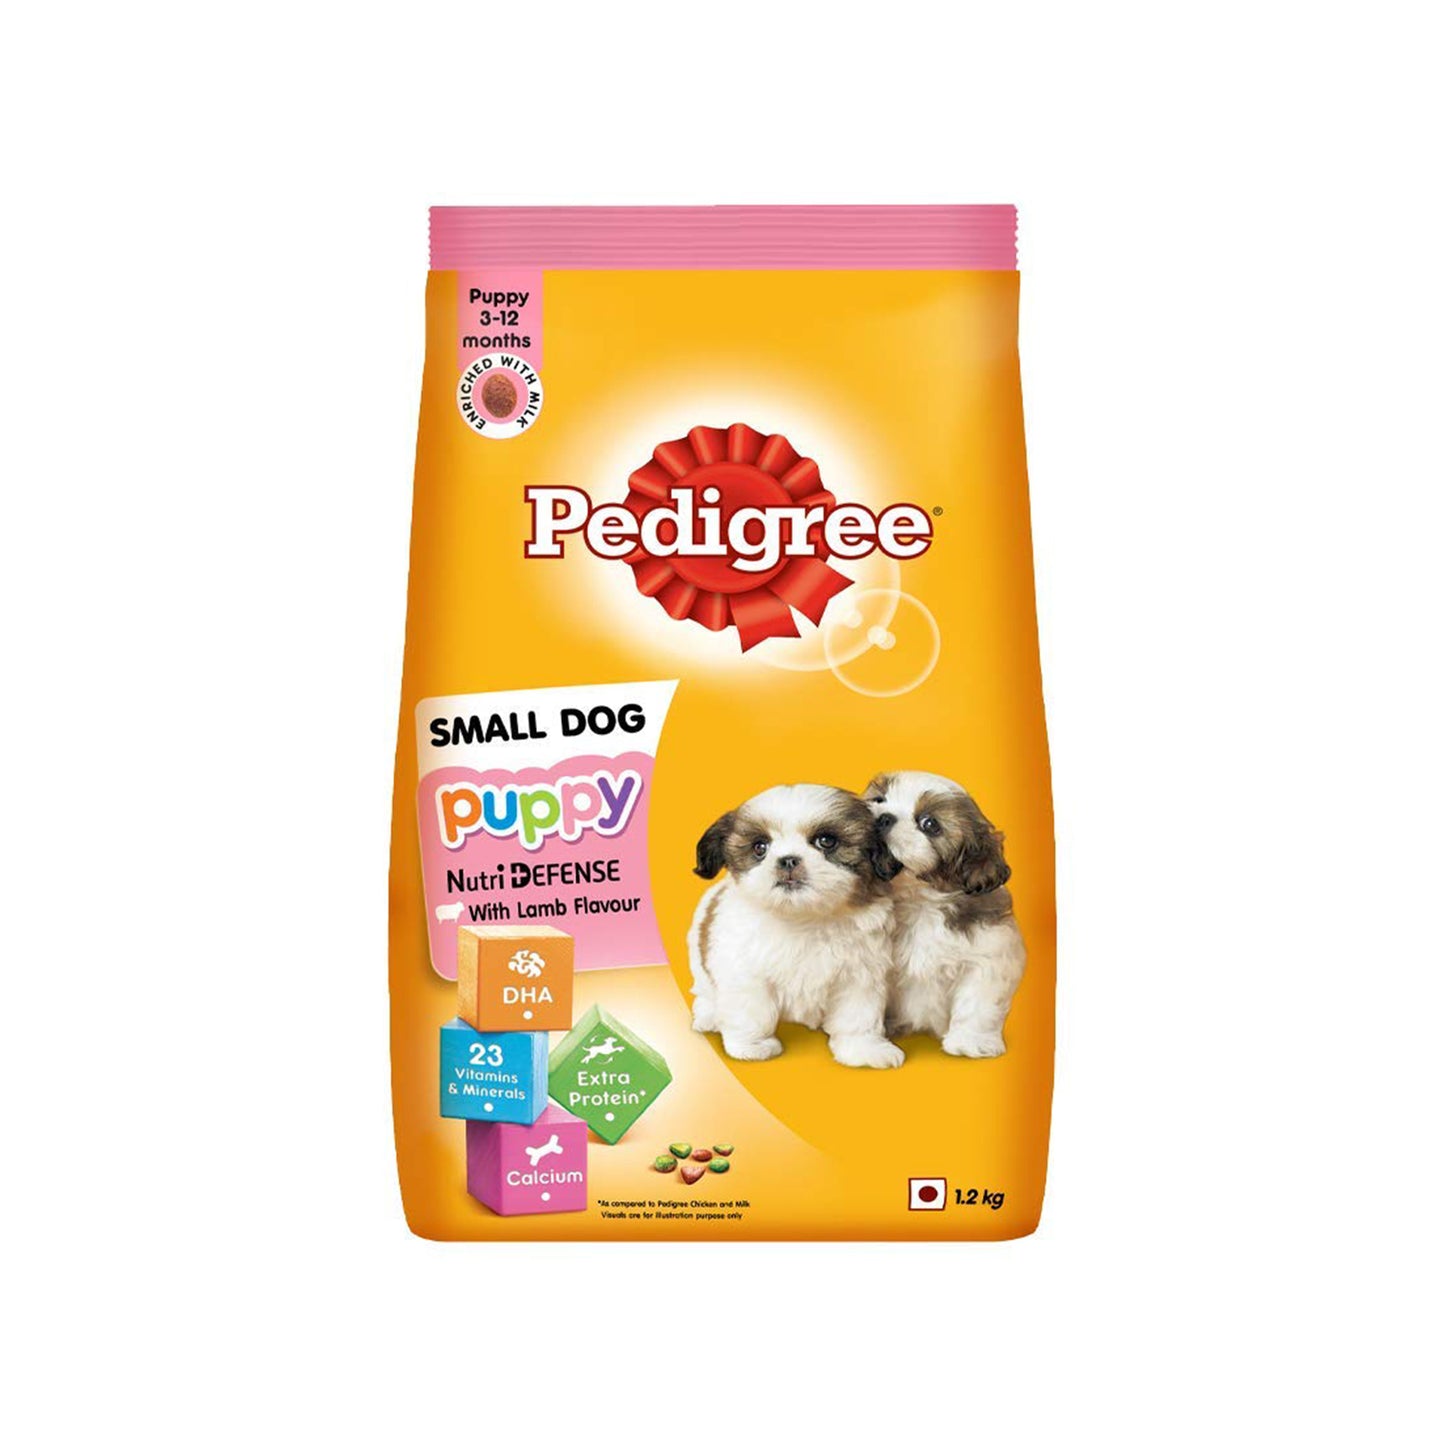 Pedigree - Puppy Small Dog Dry Food | Lamb & Milk Flavour